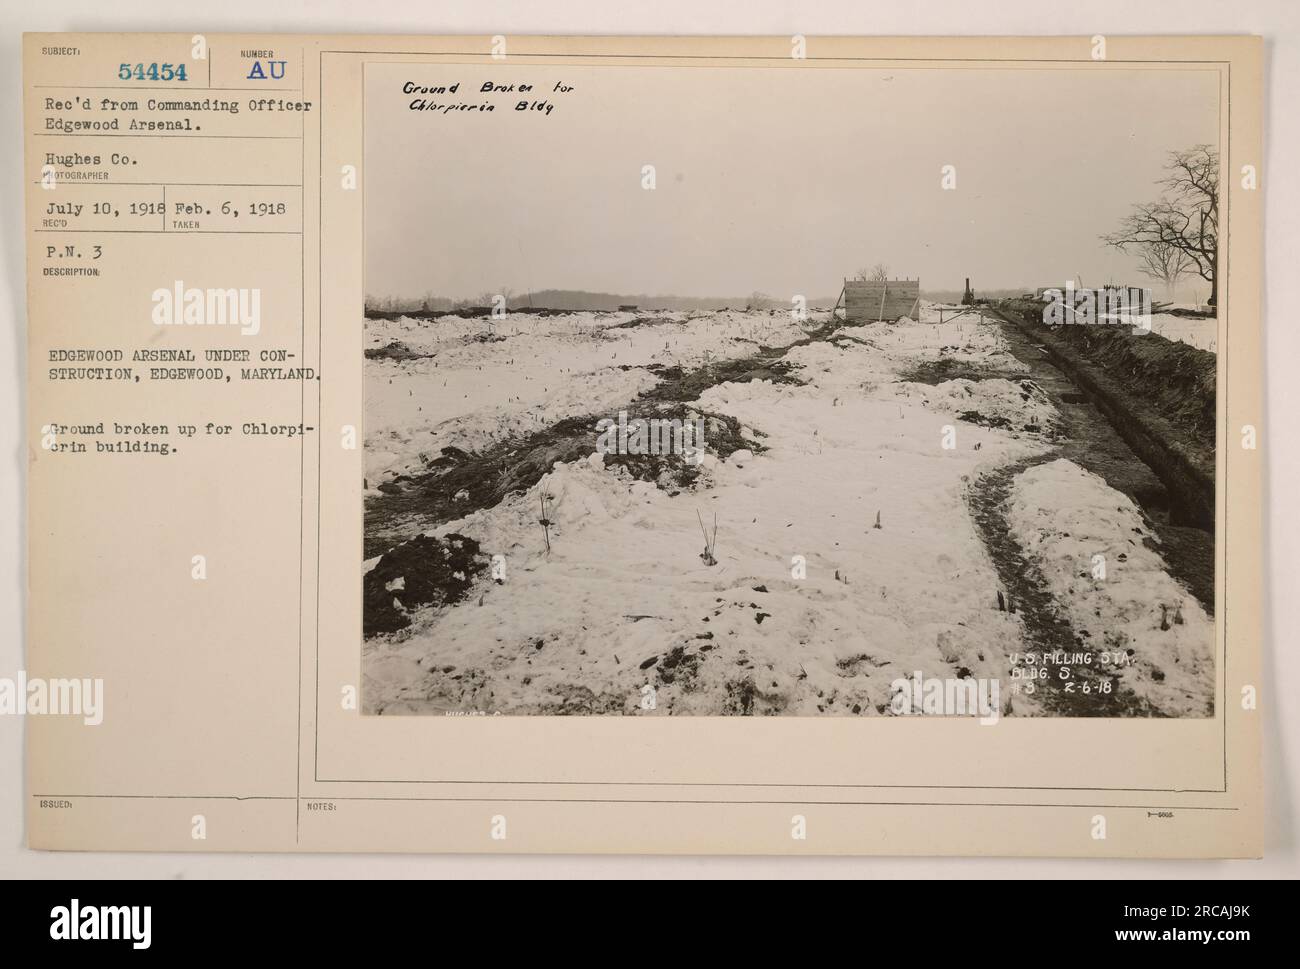 L'Edgewood Arsenal è in costruzione a Edgewood, Maryland. Il terreno è in fase di demolizione per la costruzione dell'edificio Chlorpicrin da parte della Hughes Co. La foto è stata scattata il 6 febbraio 1918 e ricevuta dall'ufficiale comandante dell'Arsenale di Edgewood con il numero P.M. 3. Foto Stock